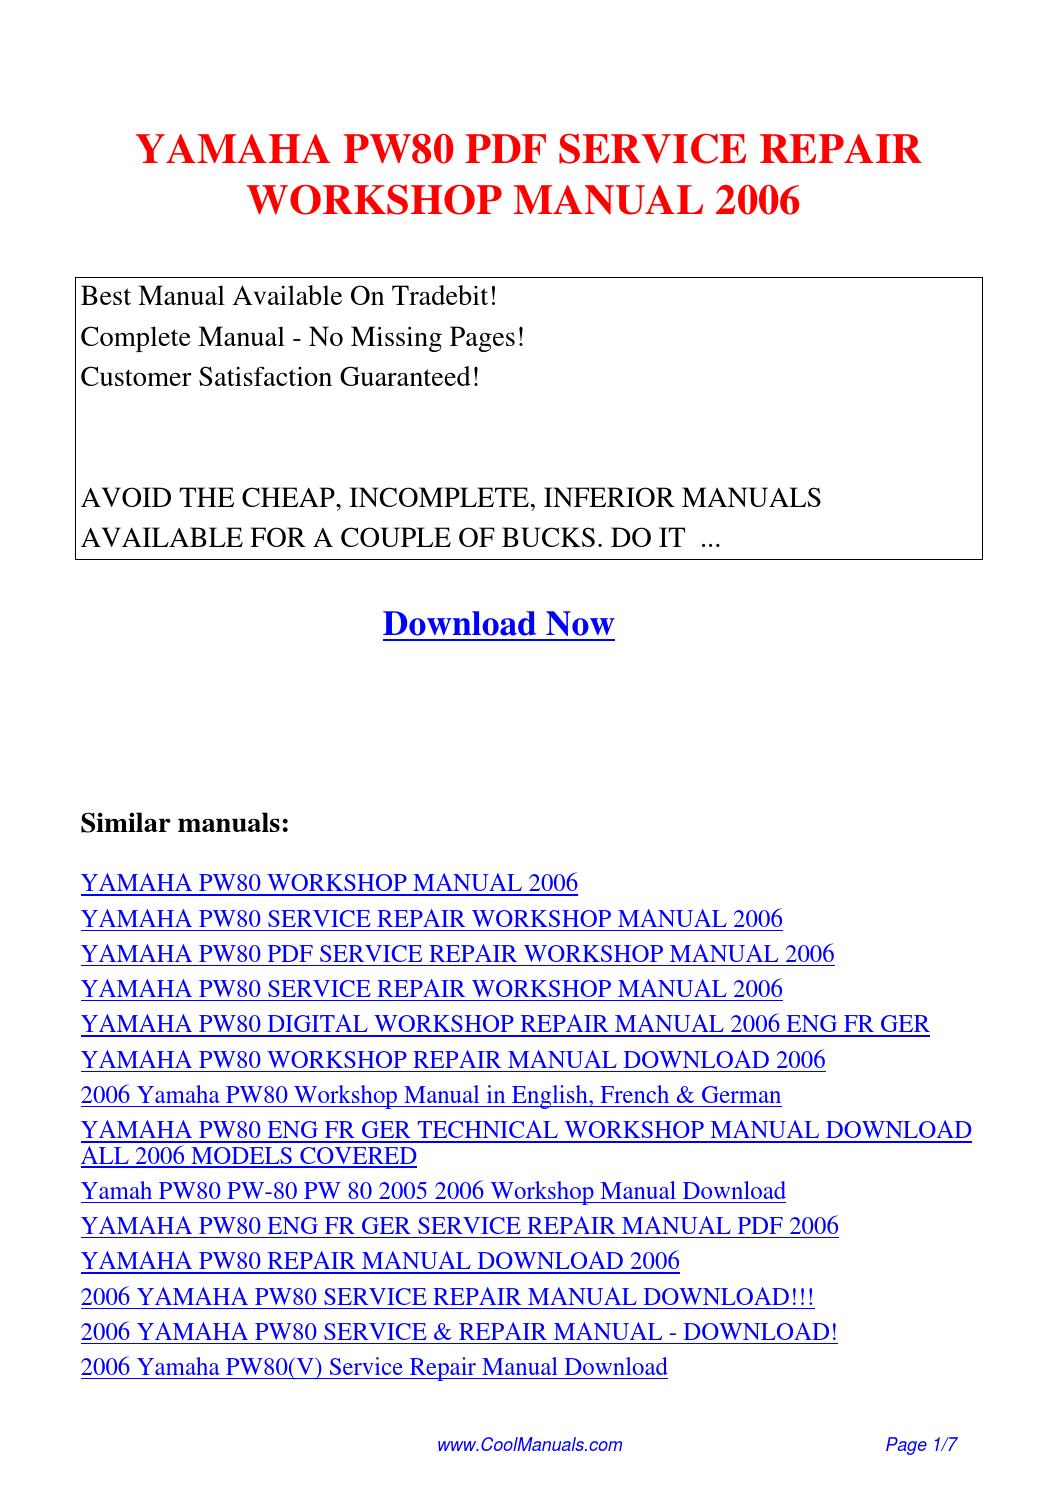 Coastal engineering manual 2006 pdf